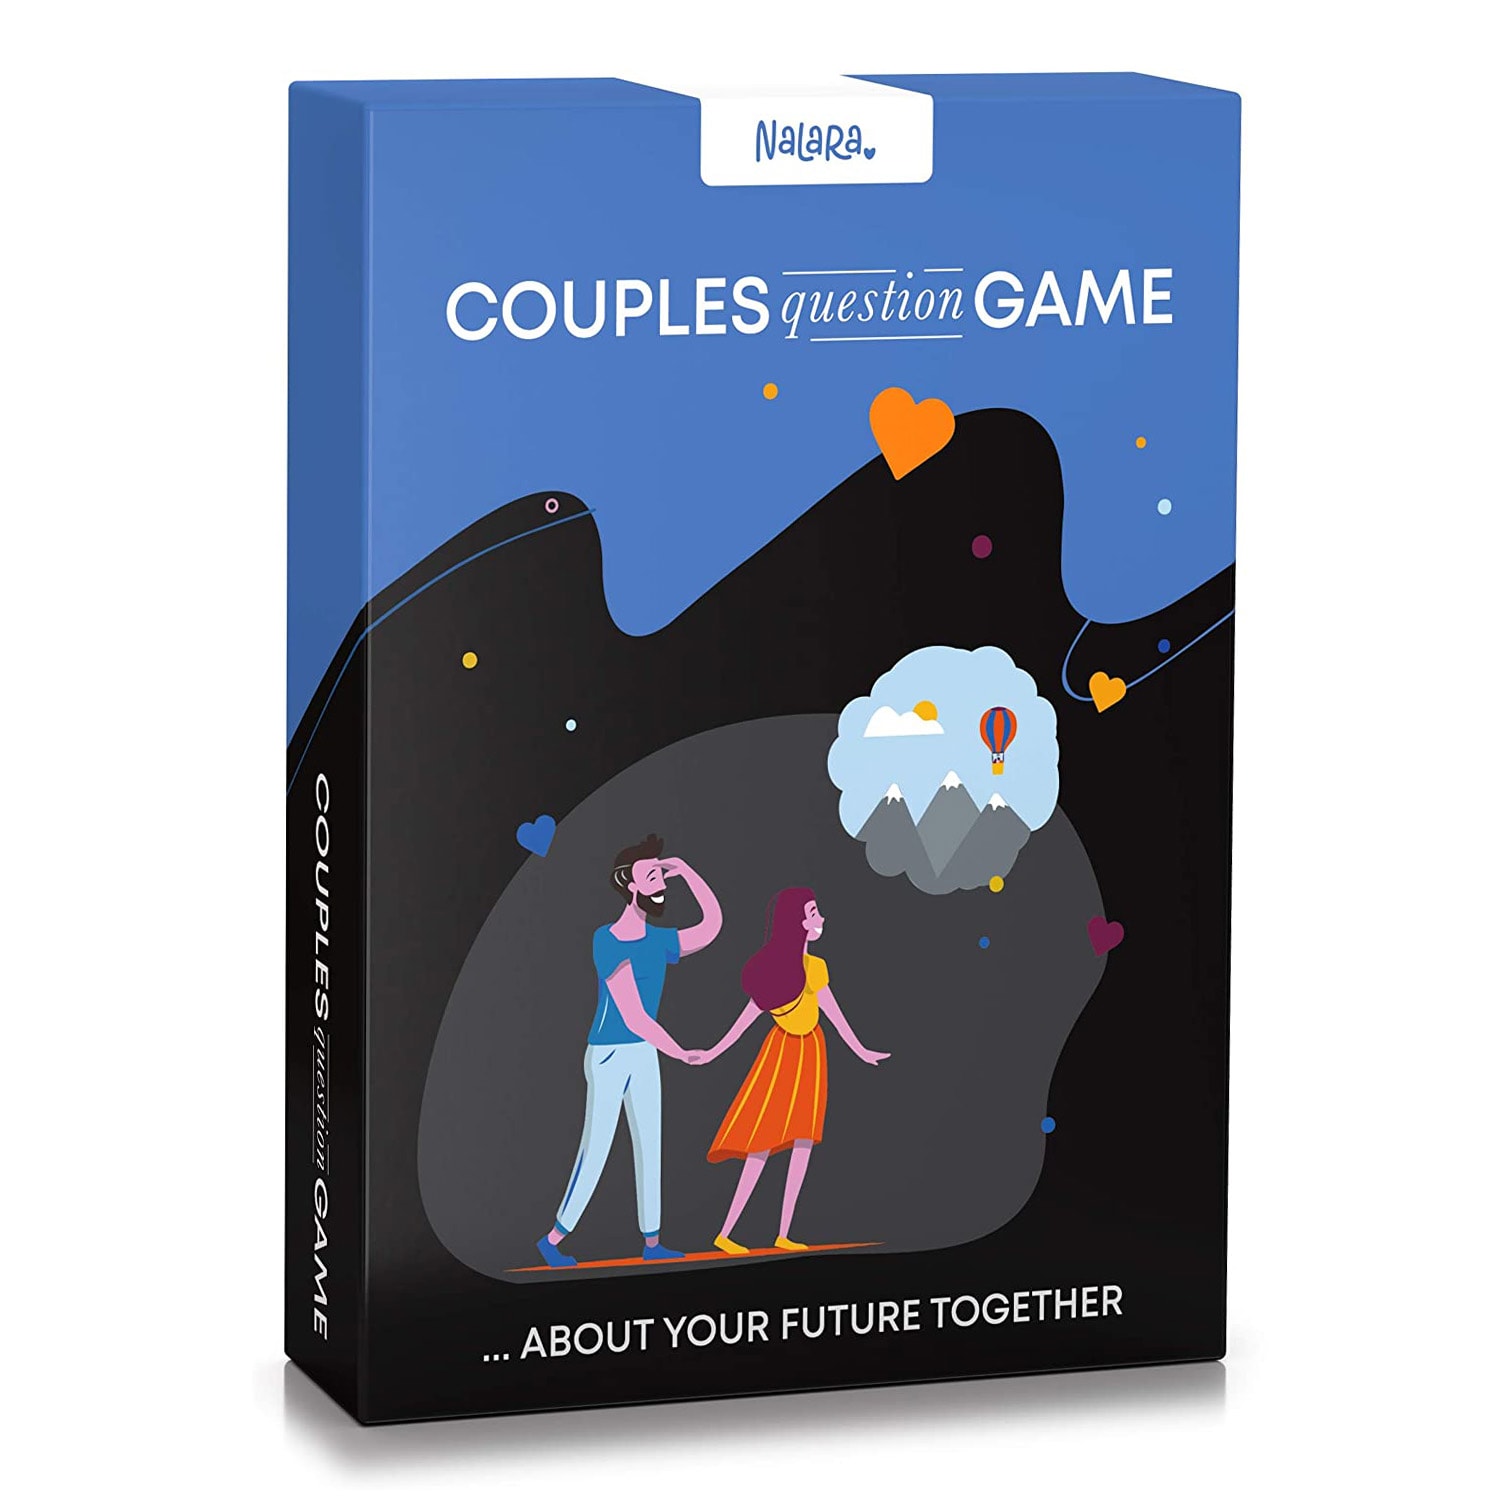 Spielehelden 50 Date Adventures for You & Me, kártyajáték pároknak, 50 kártya angol nyelvű